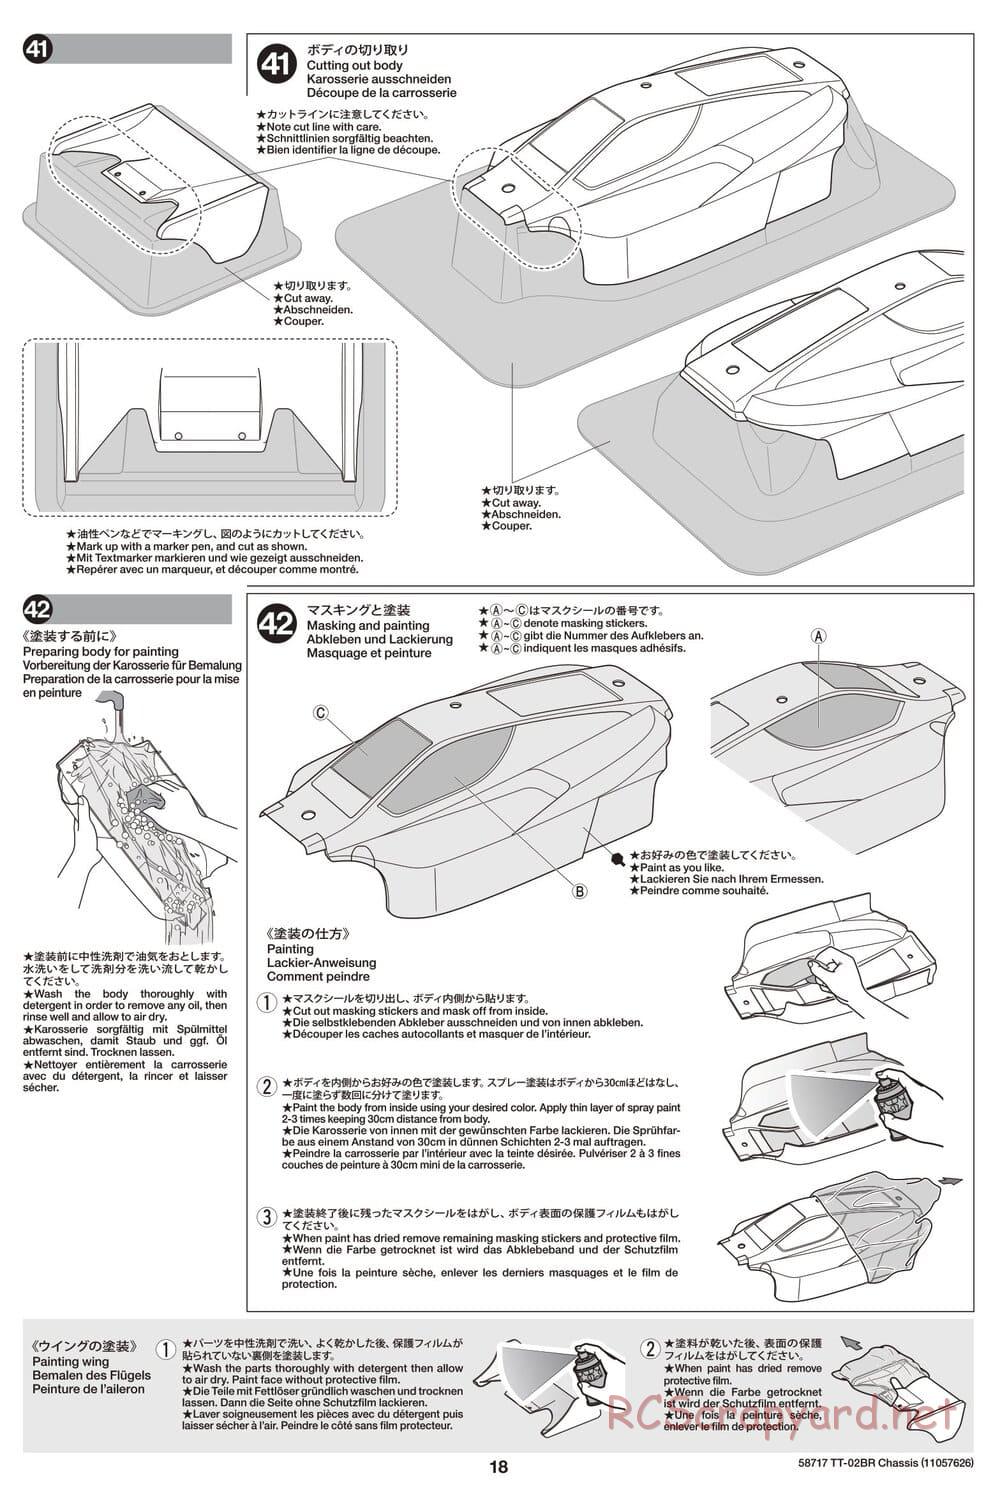 Tamiya - TT-02BR Chassis - Manual - Page 18